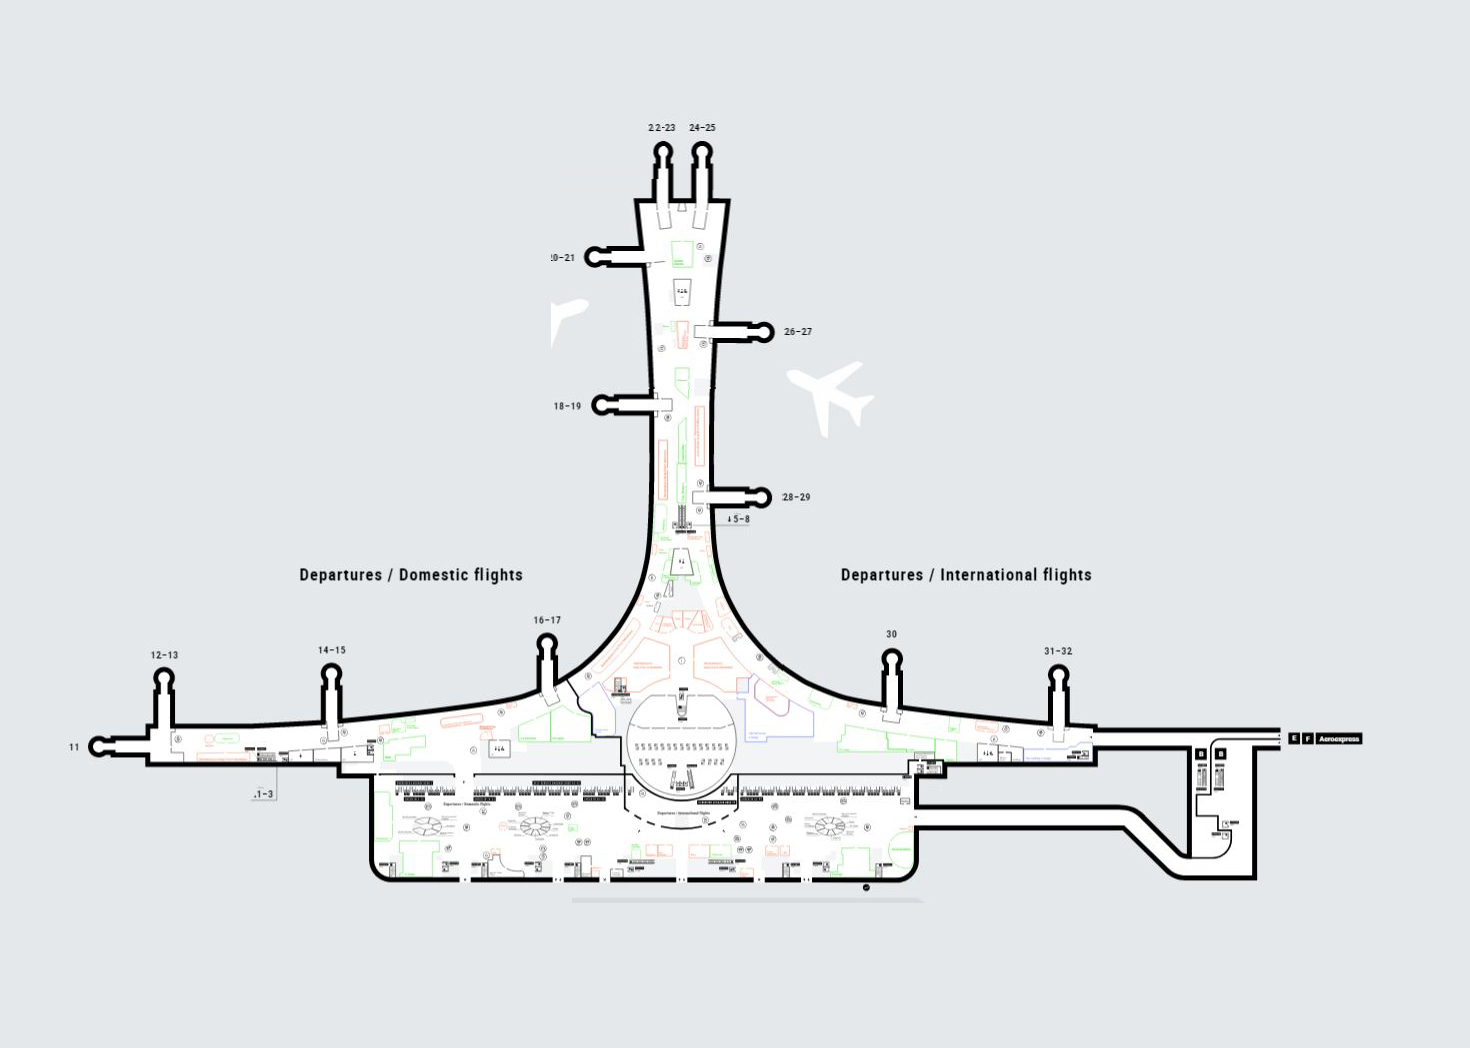 Вода на внутренних рейсах. Аэропорт Шереметьево терминал д схема. План аэропорта Шереметьево терминал d. Терминал d Шереметьево схема аэропорта вылет. Схема аэропорта Шереметьево терминал b вылет.